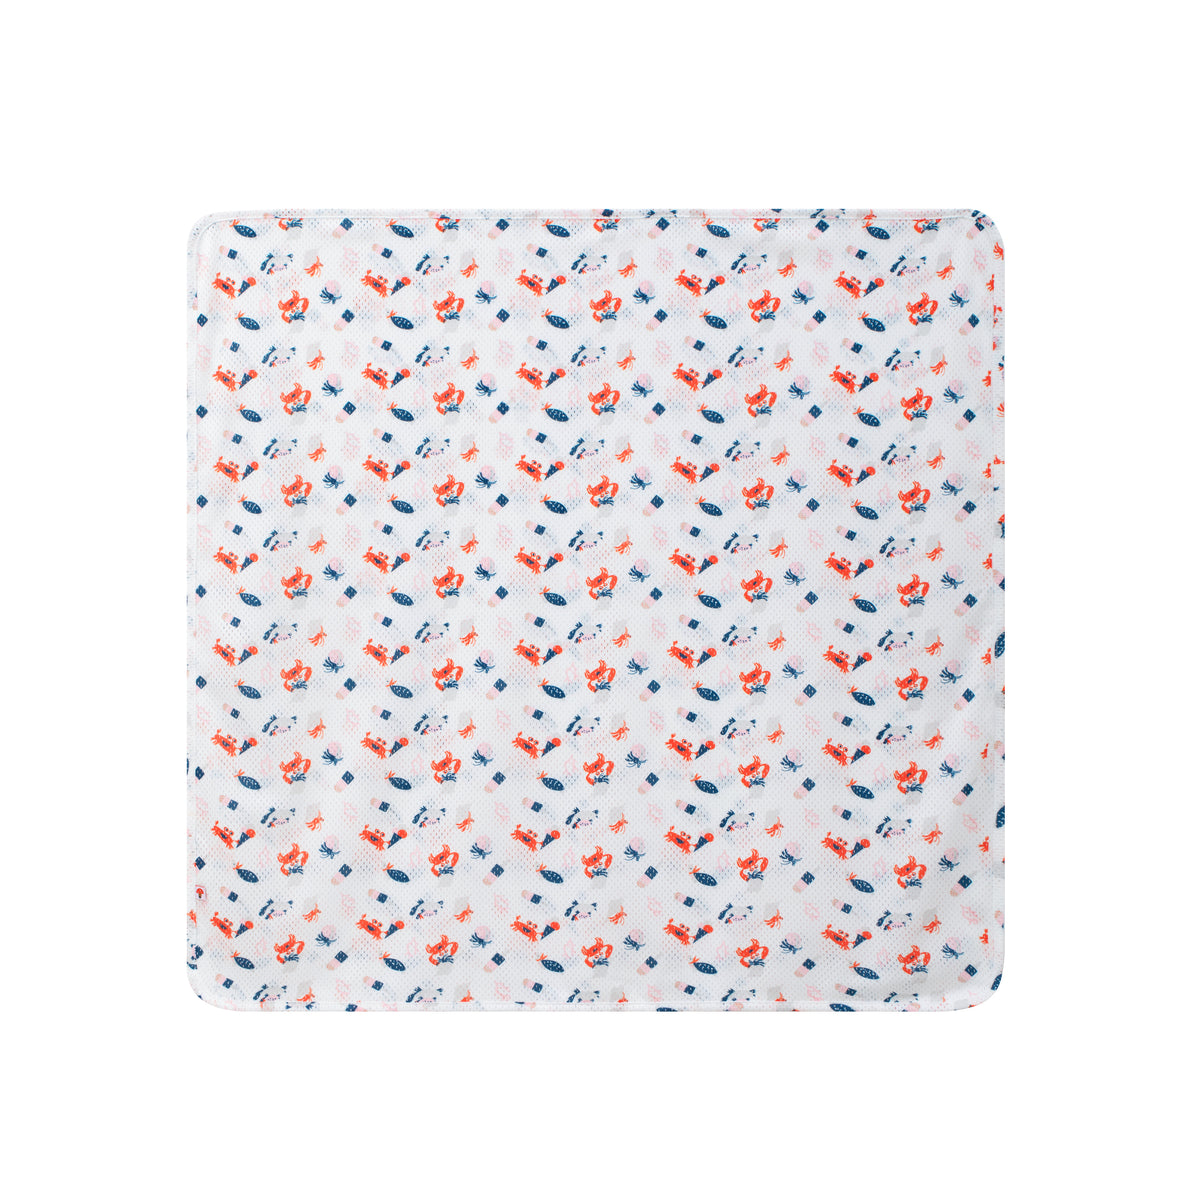 VAUVA Vauva SS24 - Baby Printed Blanket (Crab) Blanket